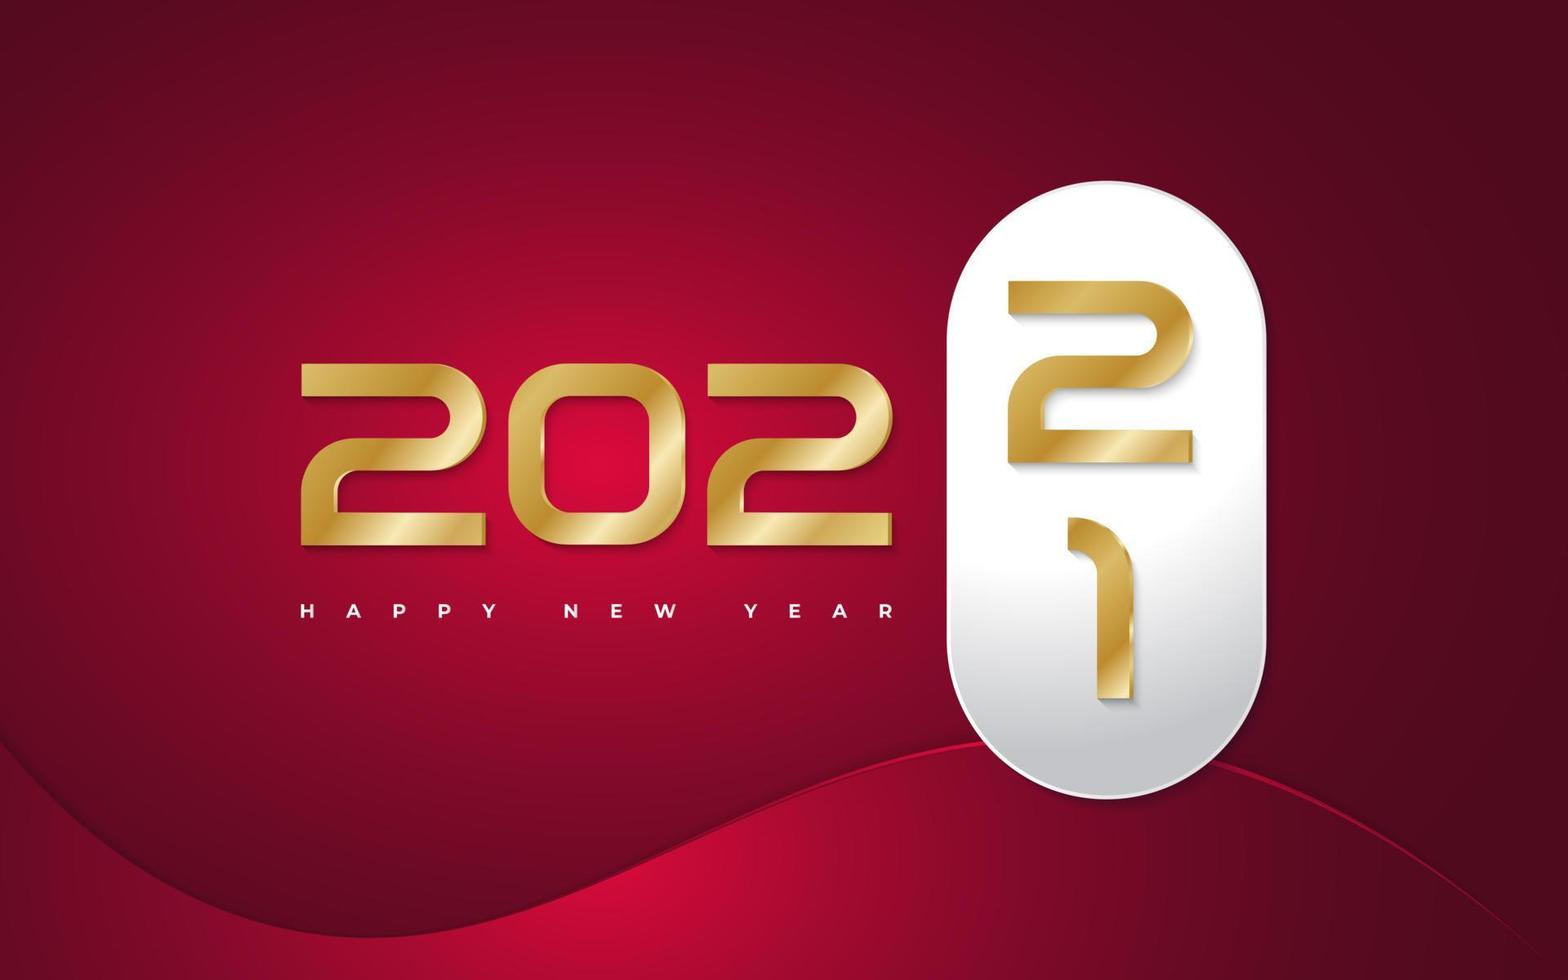 felice anno nuovo 2022 banner o poster design con numeri dorati su sfondo rosso. striscione per il cambio di capodanno. modello di progettazione per la celebrazione del nuovo anno per volantini, poster, brochure, biglietti, striscioni o cartoline vettore